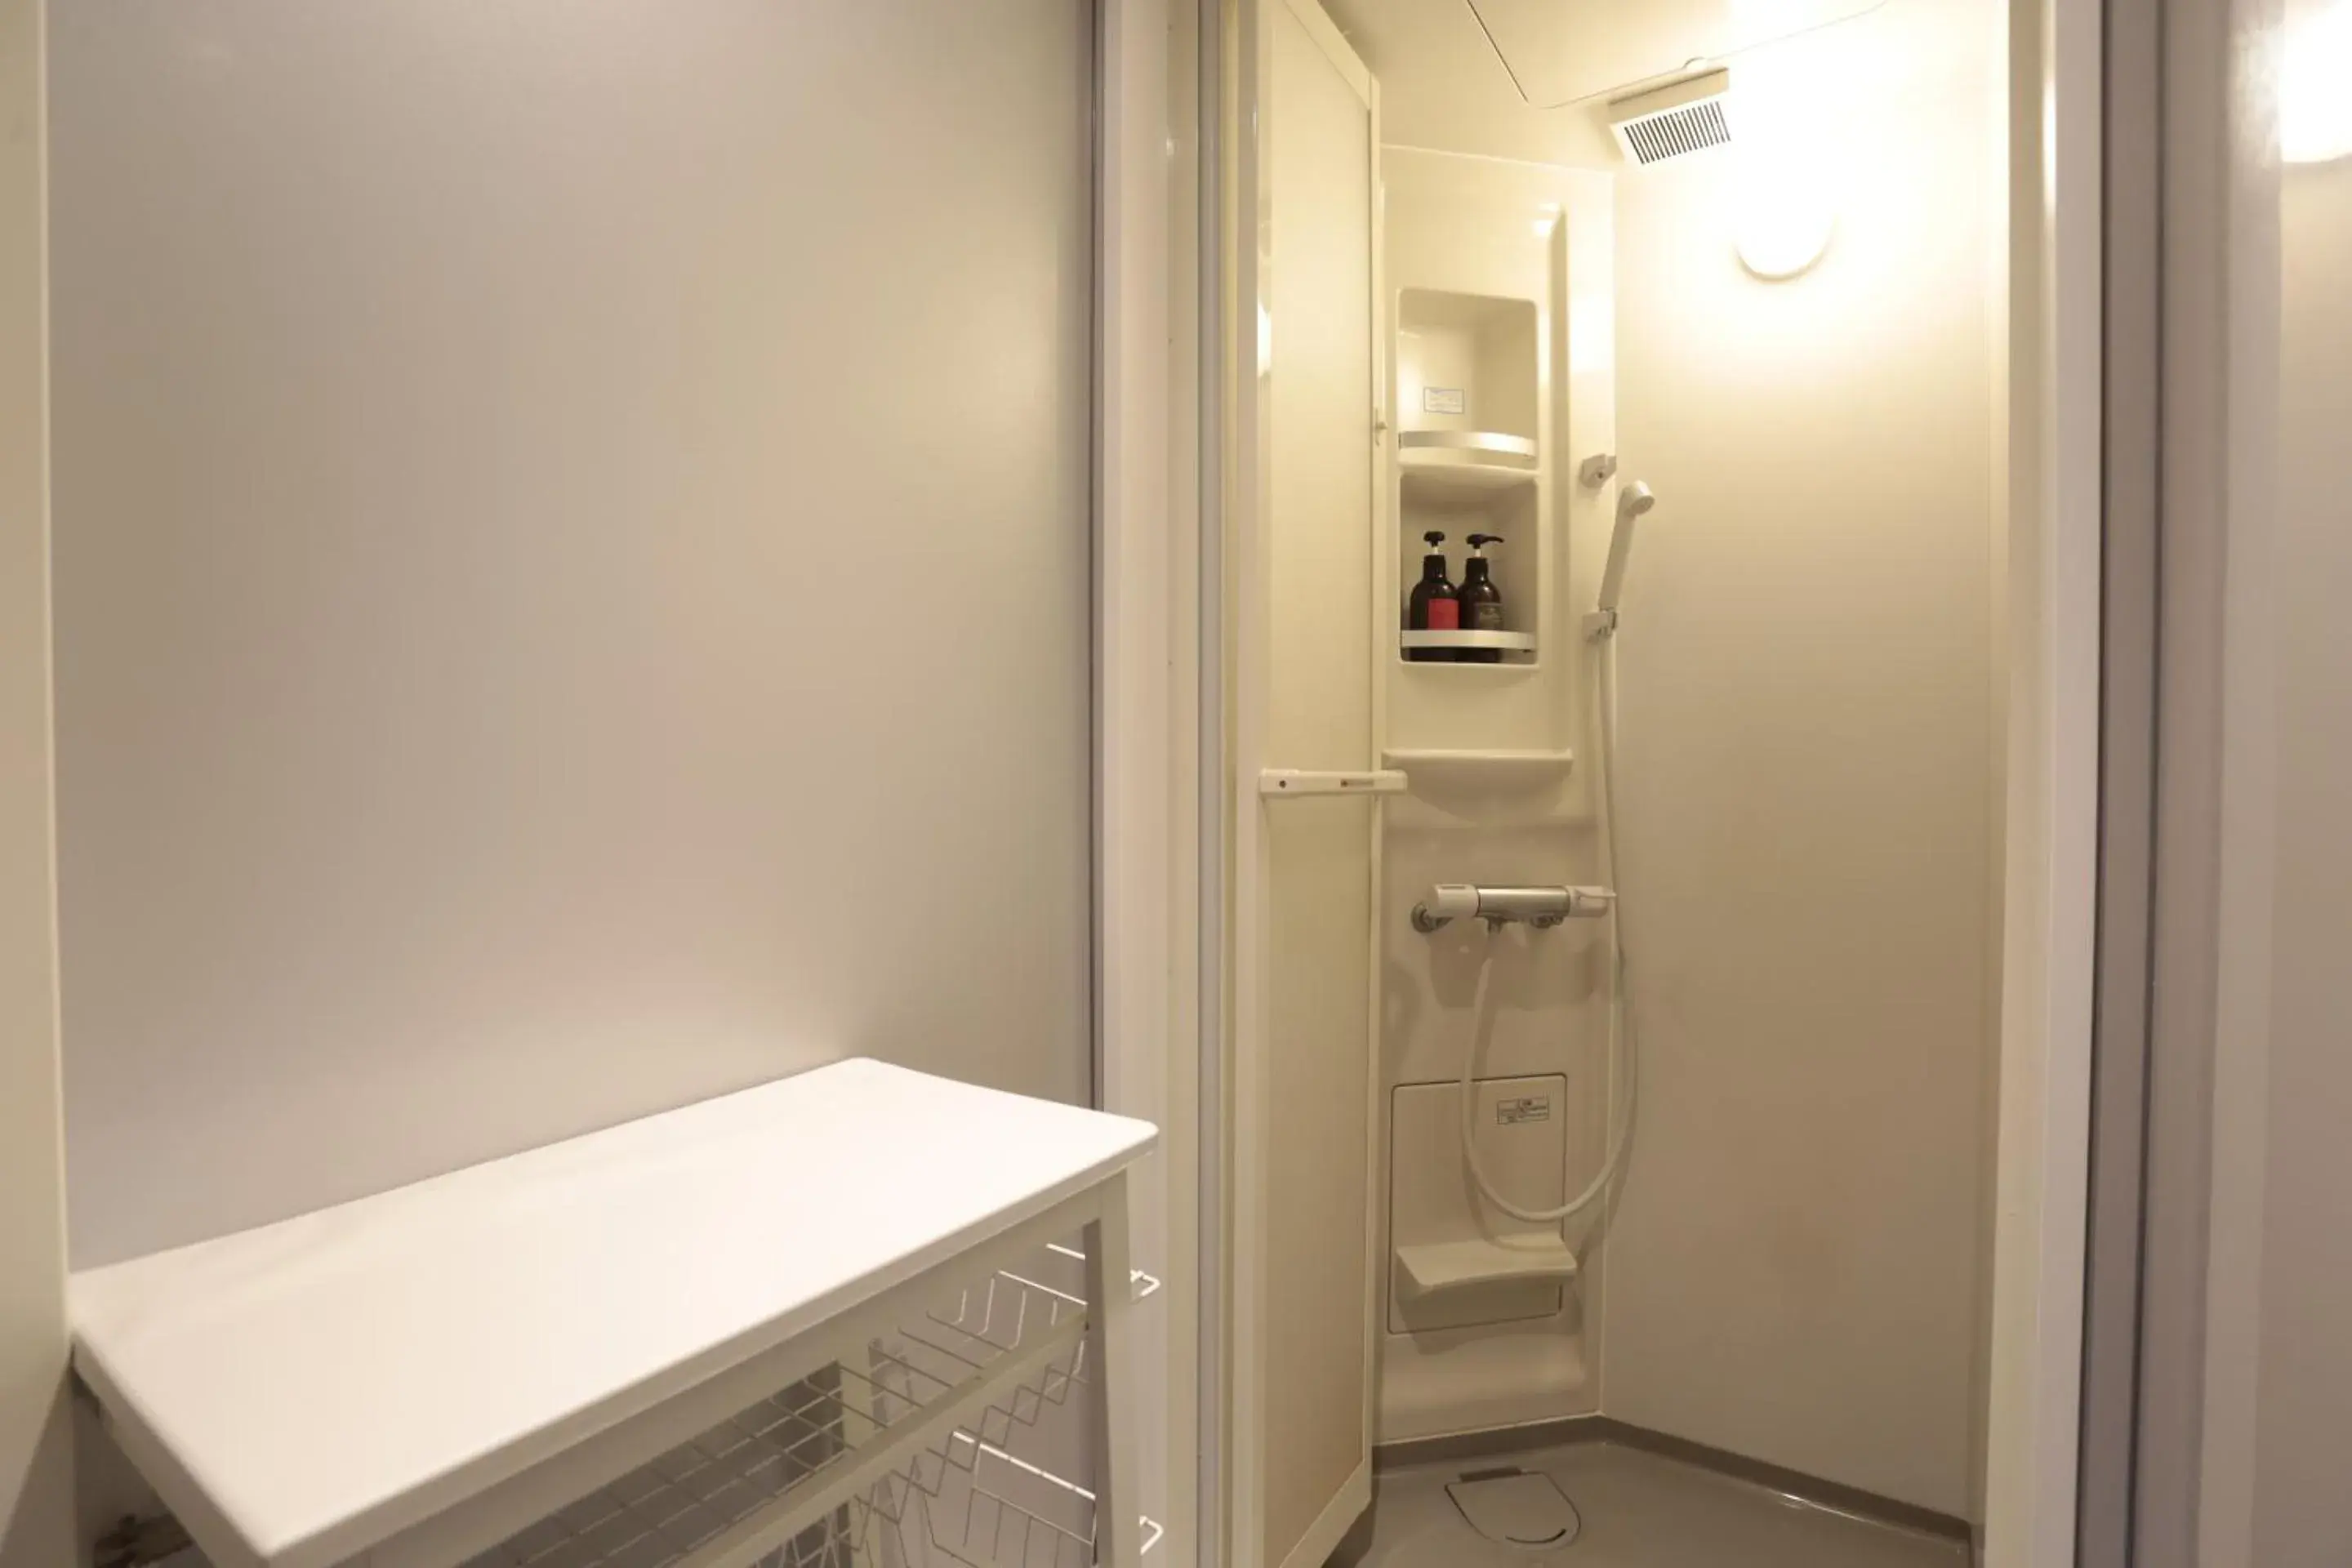 Area and facilities, Bathroom in Hotel Sunplaza 2